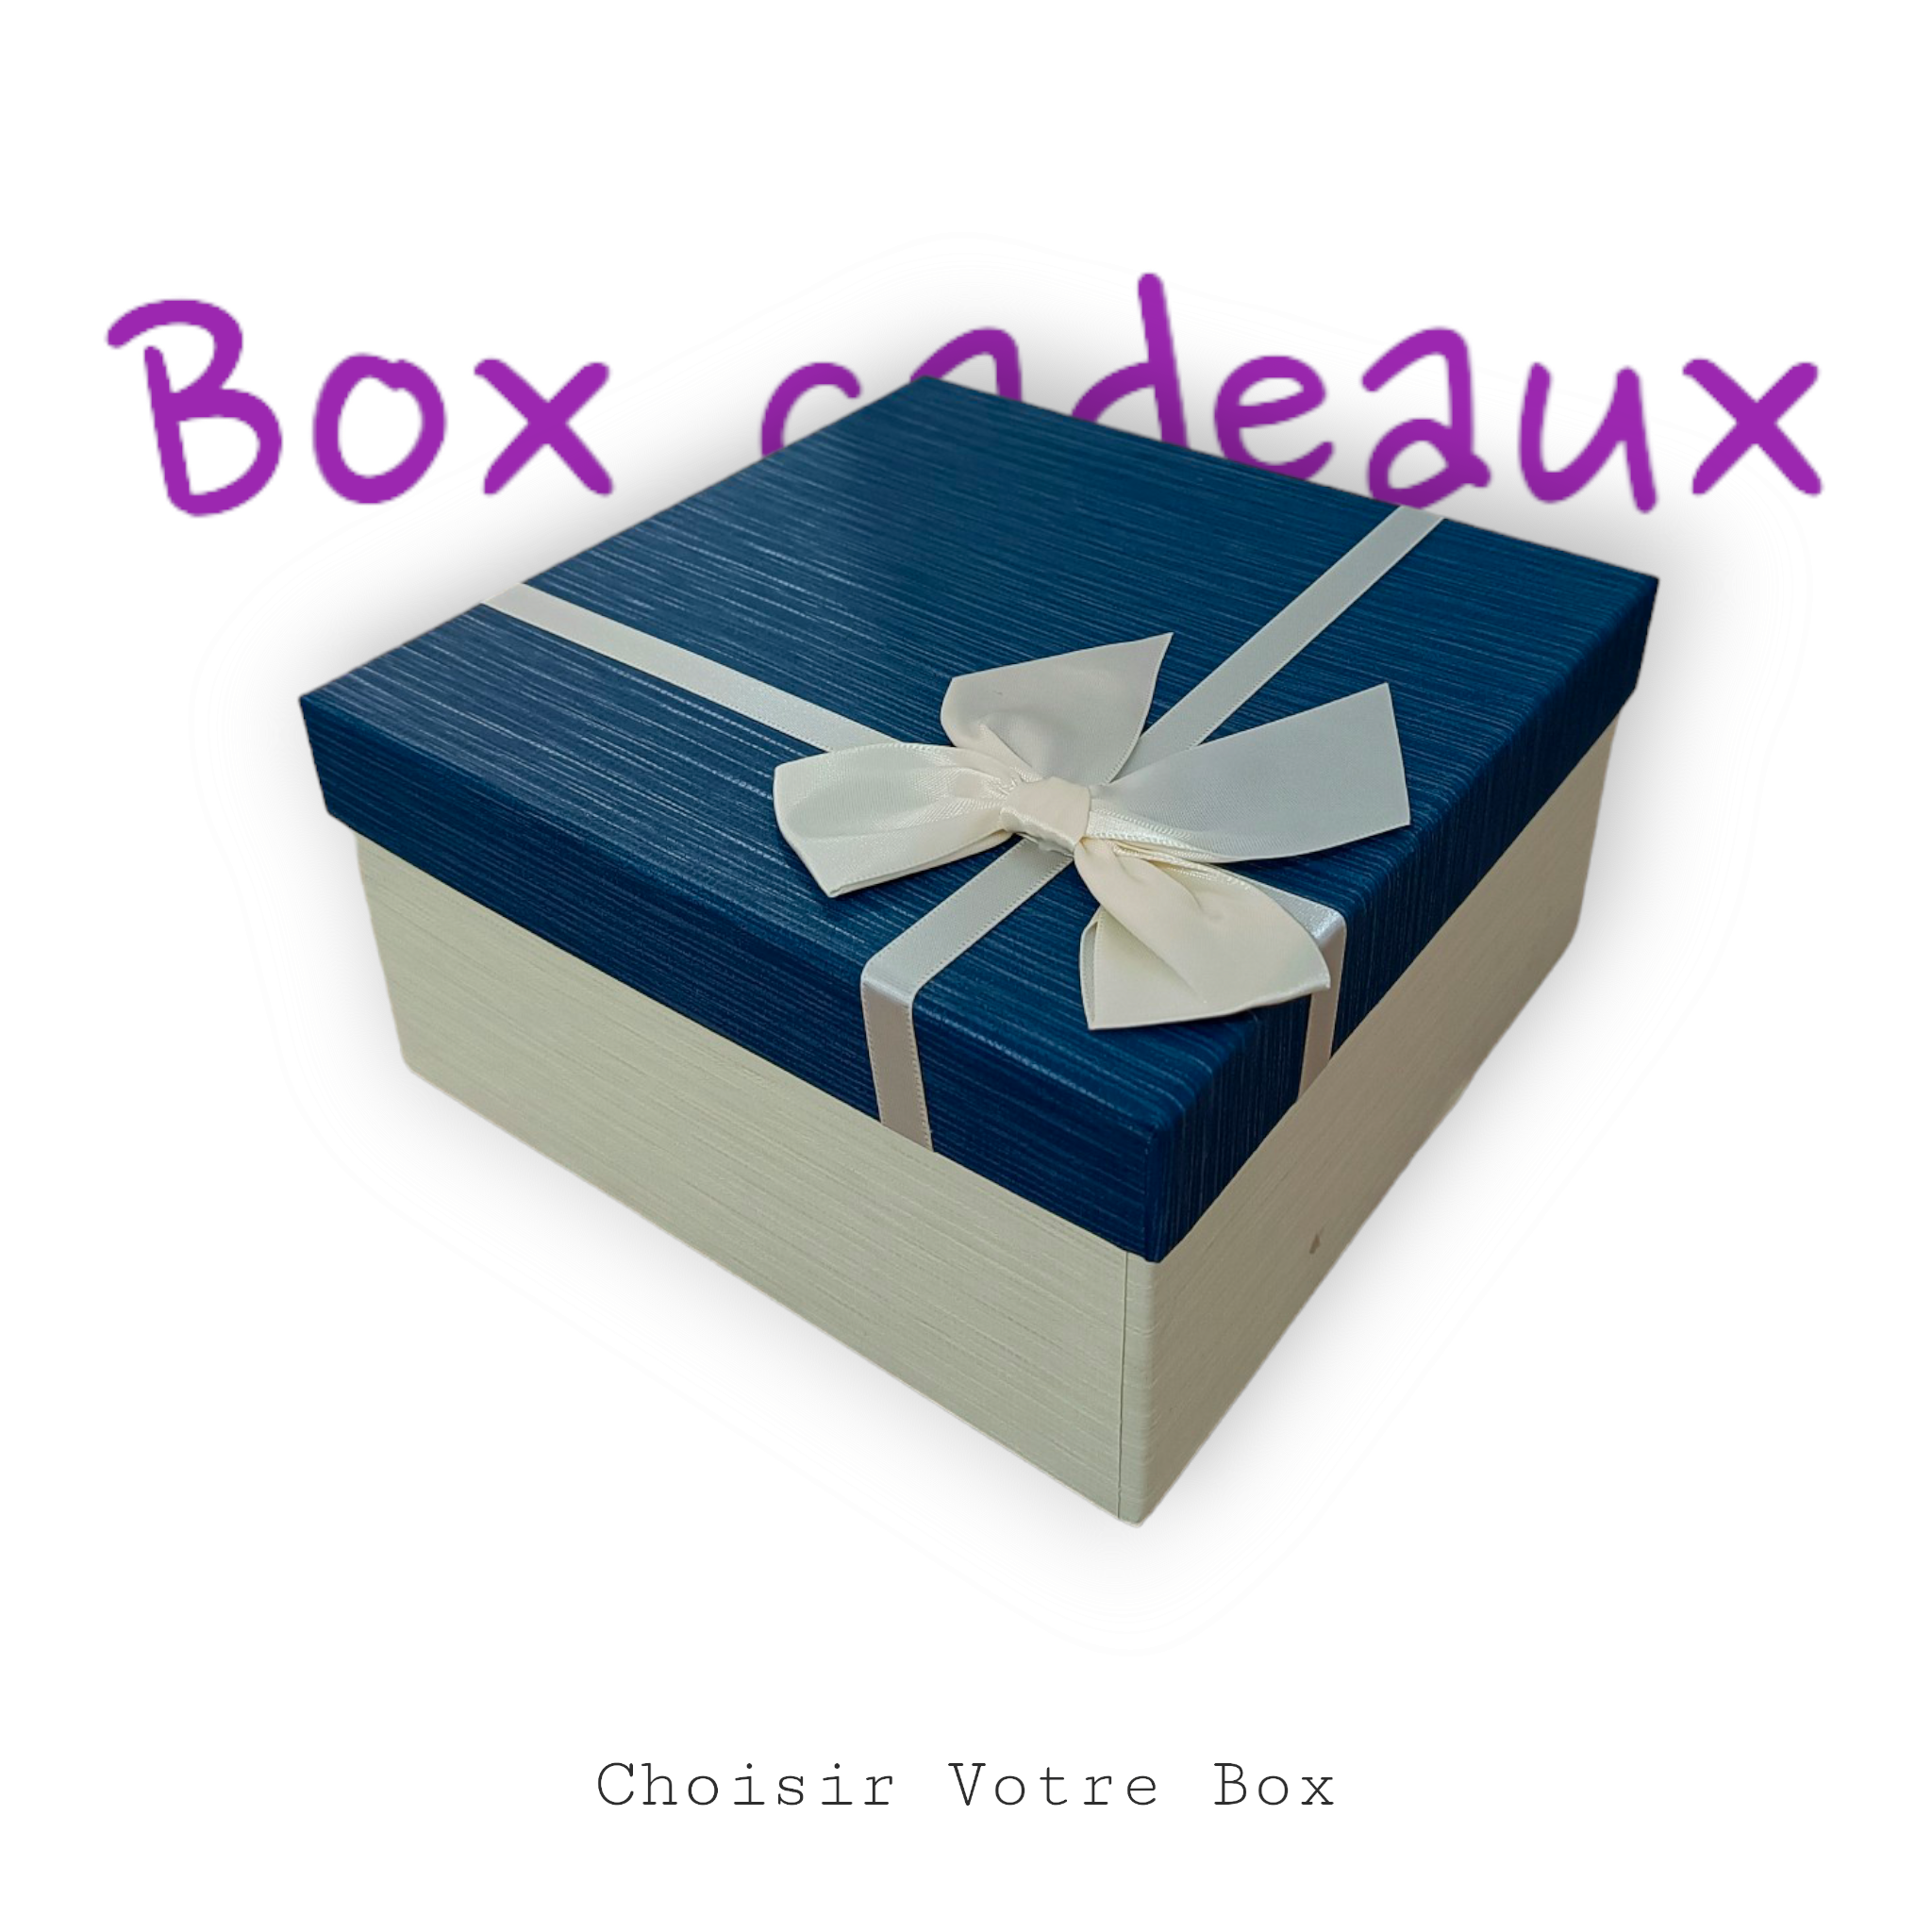 Box Cadeaux